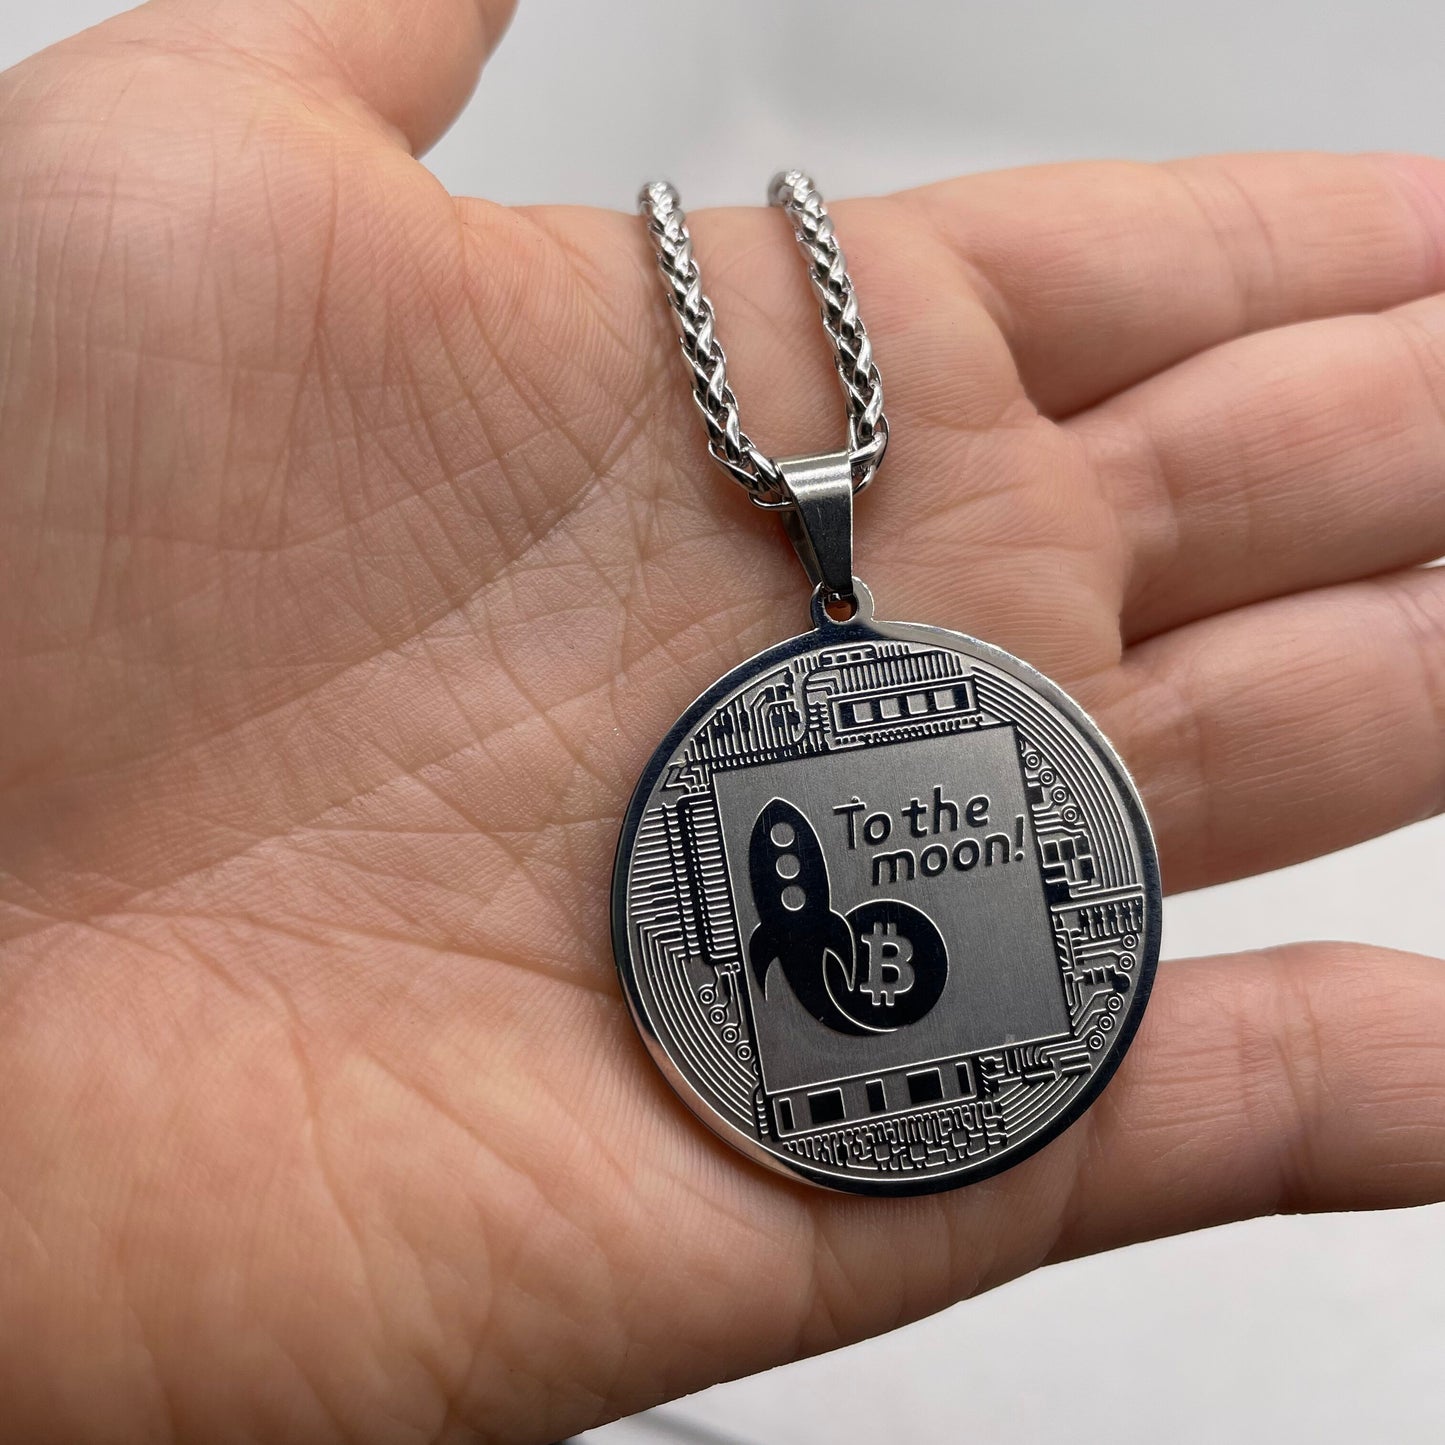 Bitcoin titanium & steel  pendant